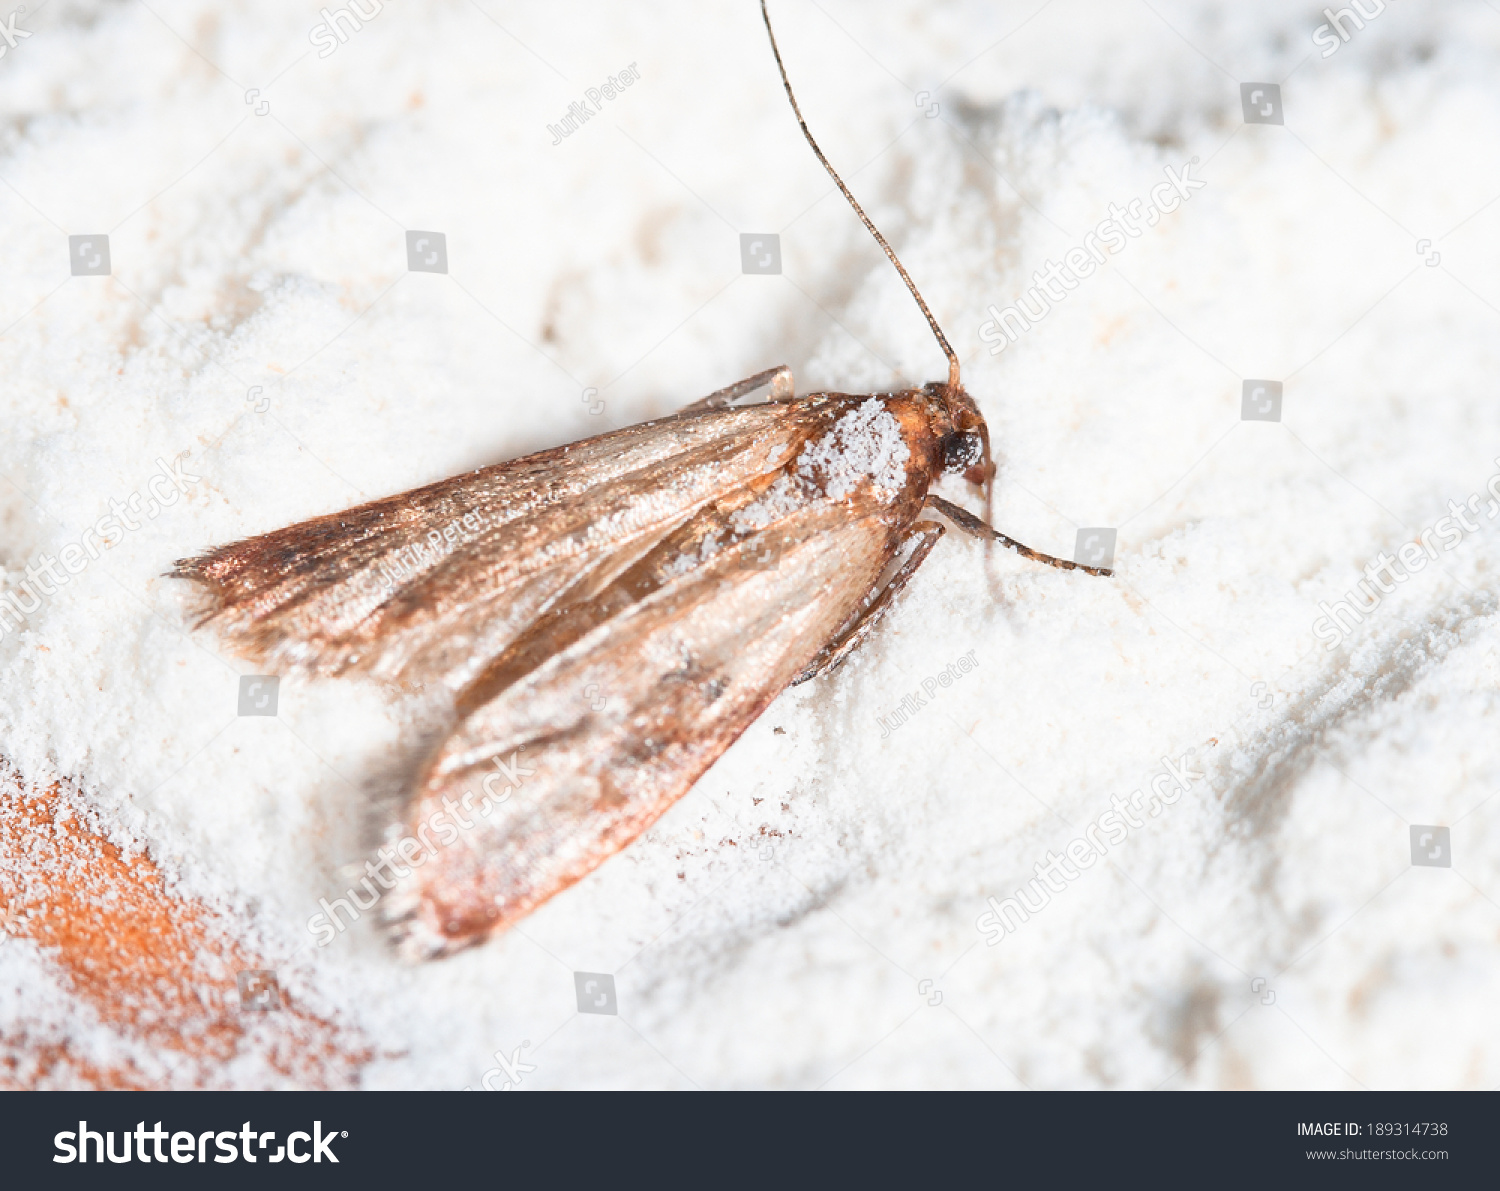 Flour Moth Pantry Moth Ephestia Kuehniella Stock Photo 189314738 ...